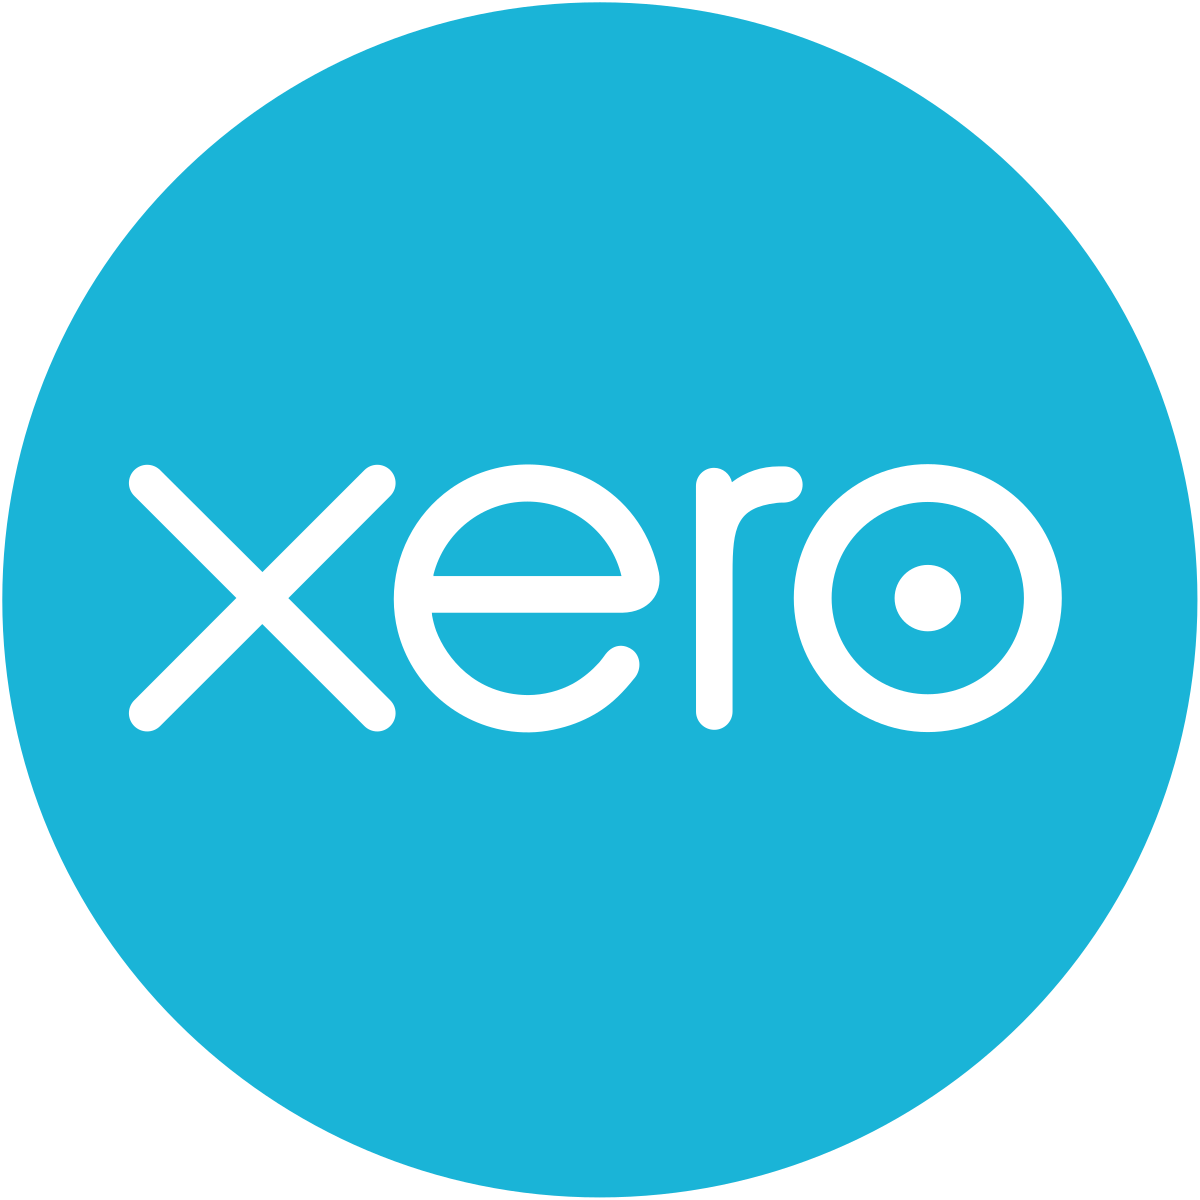 XERO users